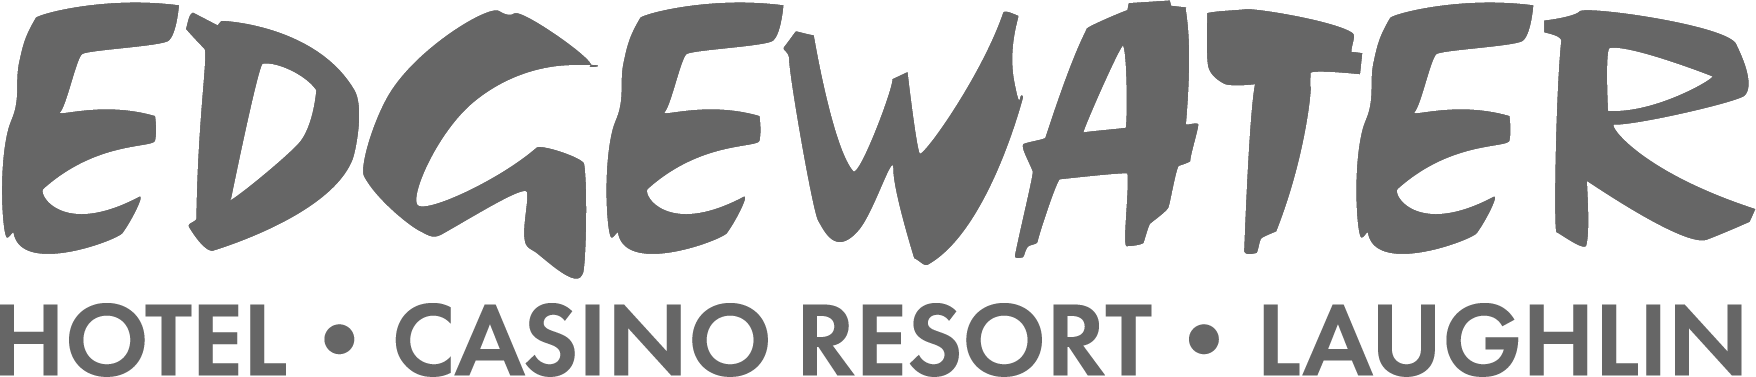 The edgewater hotel and casino logo